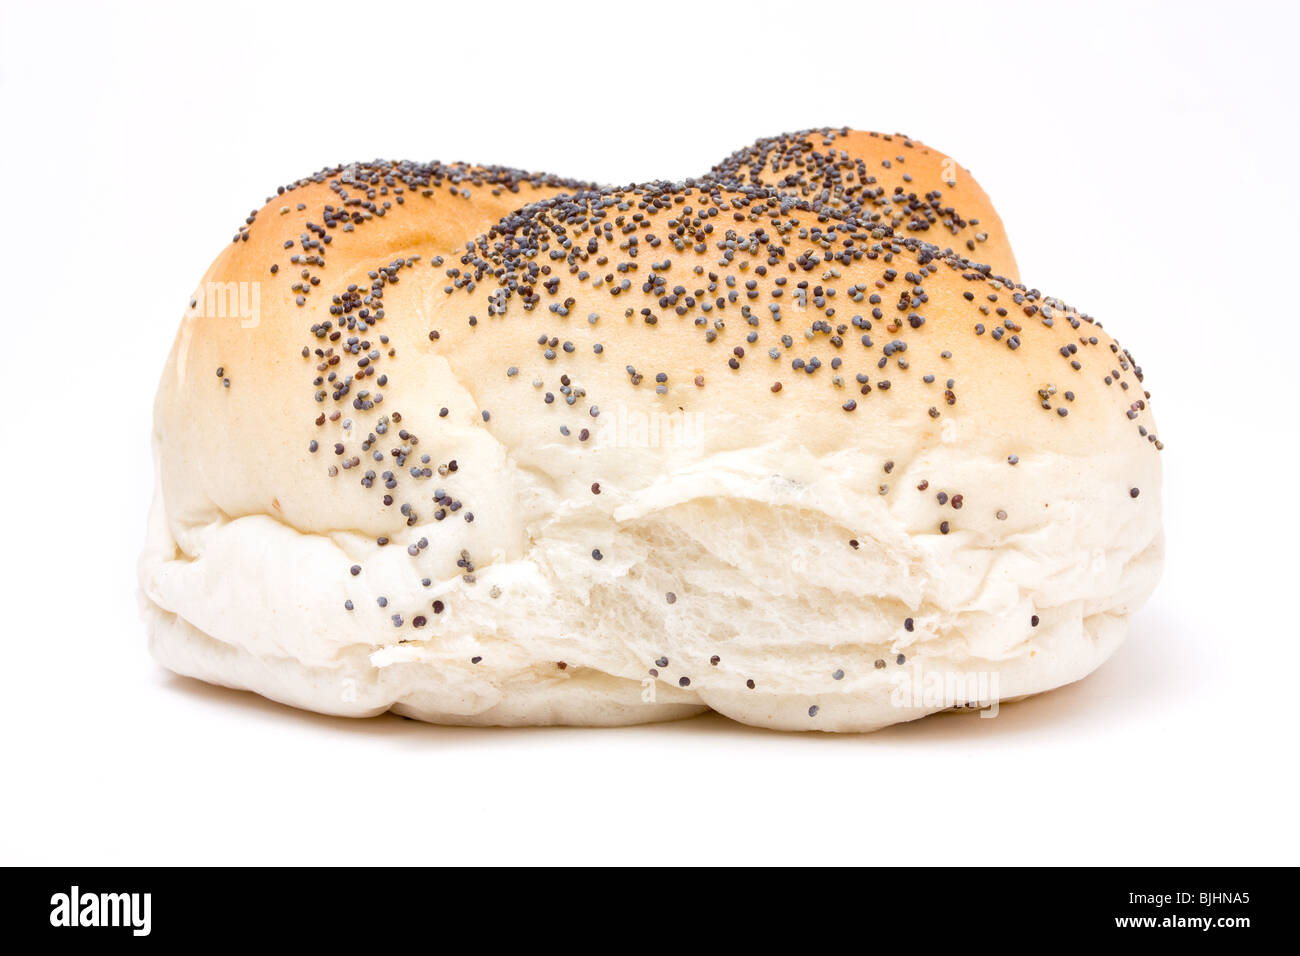 Graines de pain à partir de la vue faible contre isolé sur fond blanc. Banque D'Images